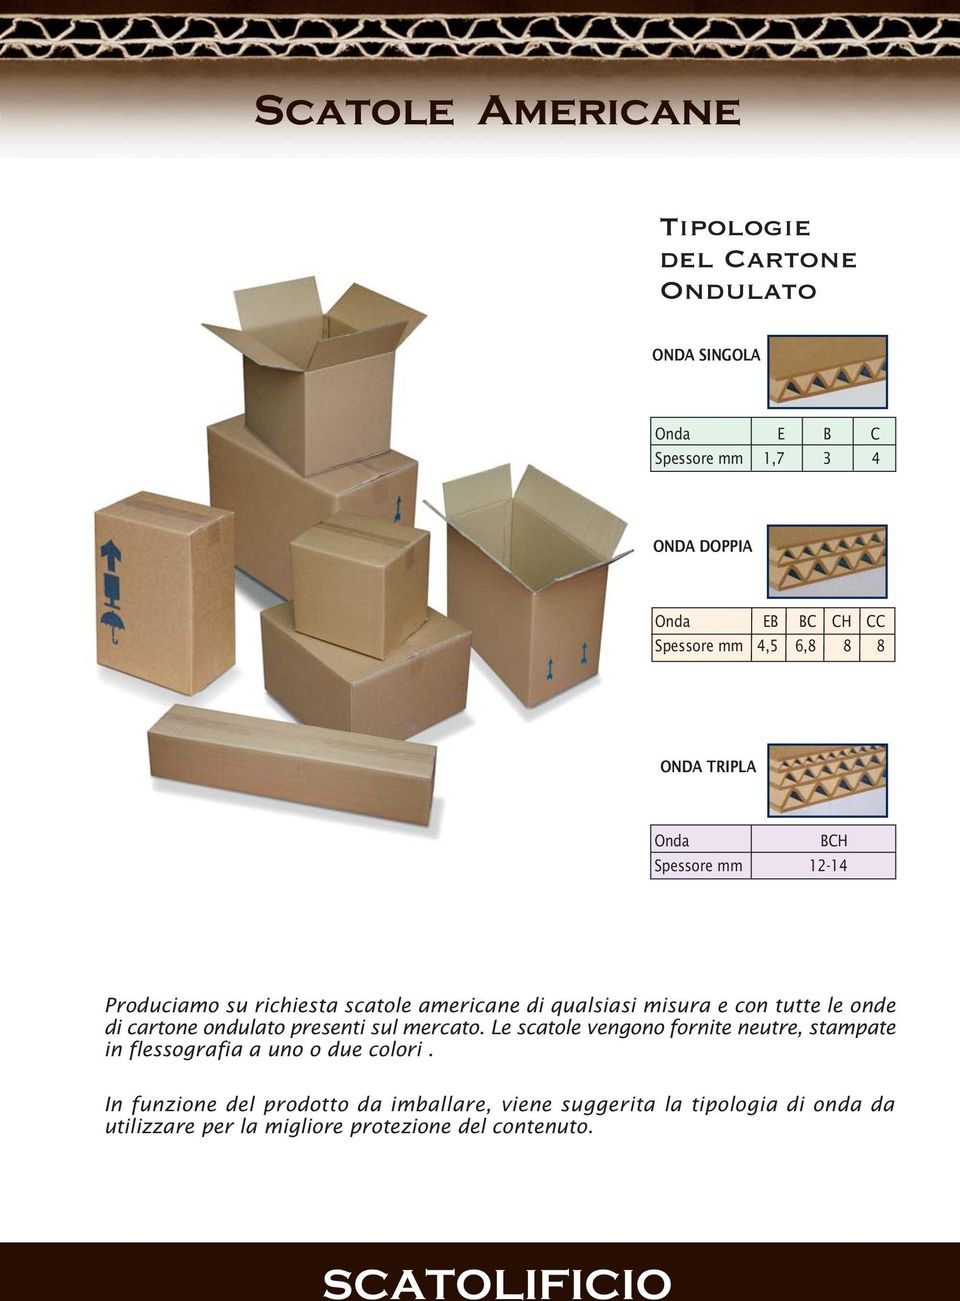 di cartone ondulato presenti sul mercato. Le scatole vengono fornite neutre, stampate in flessografia a uno o due colori.